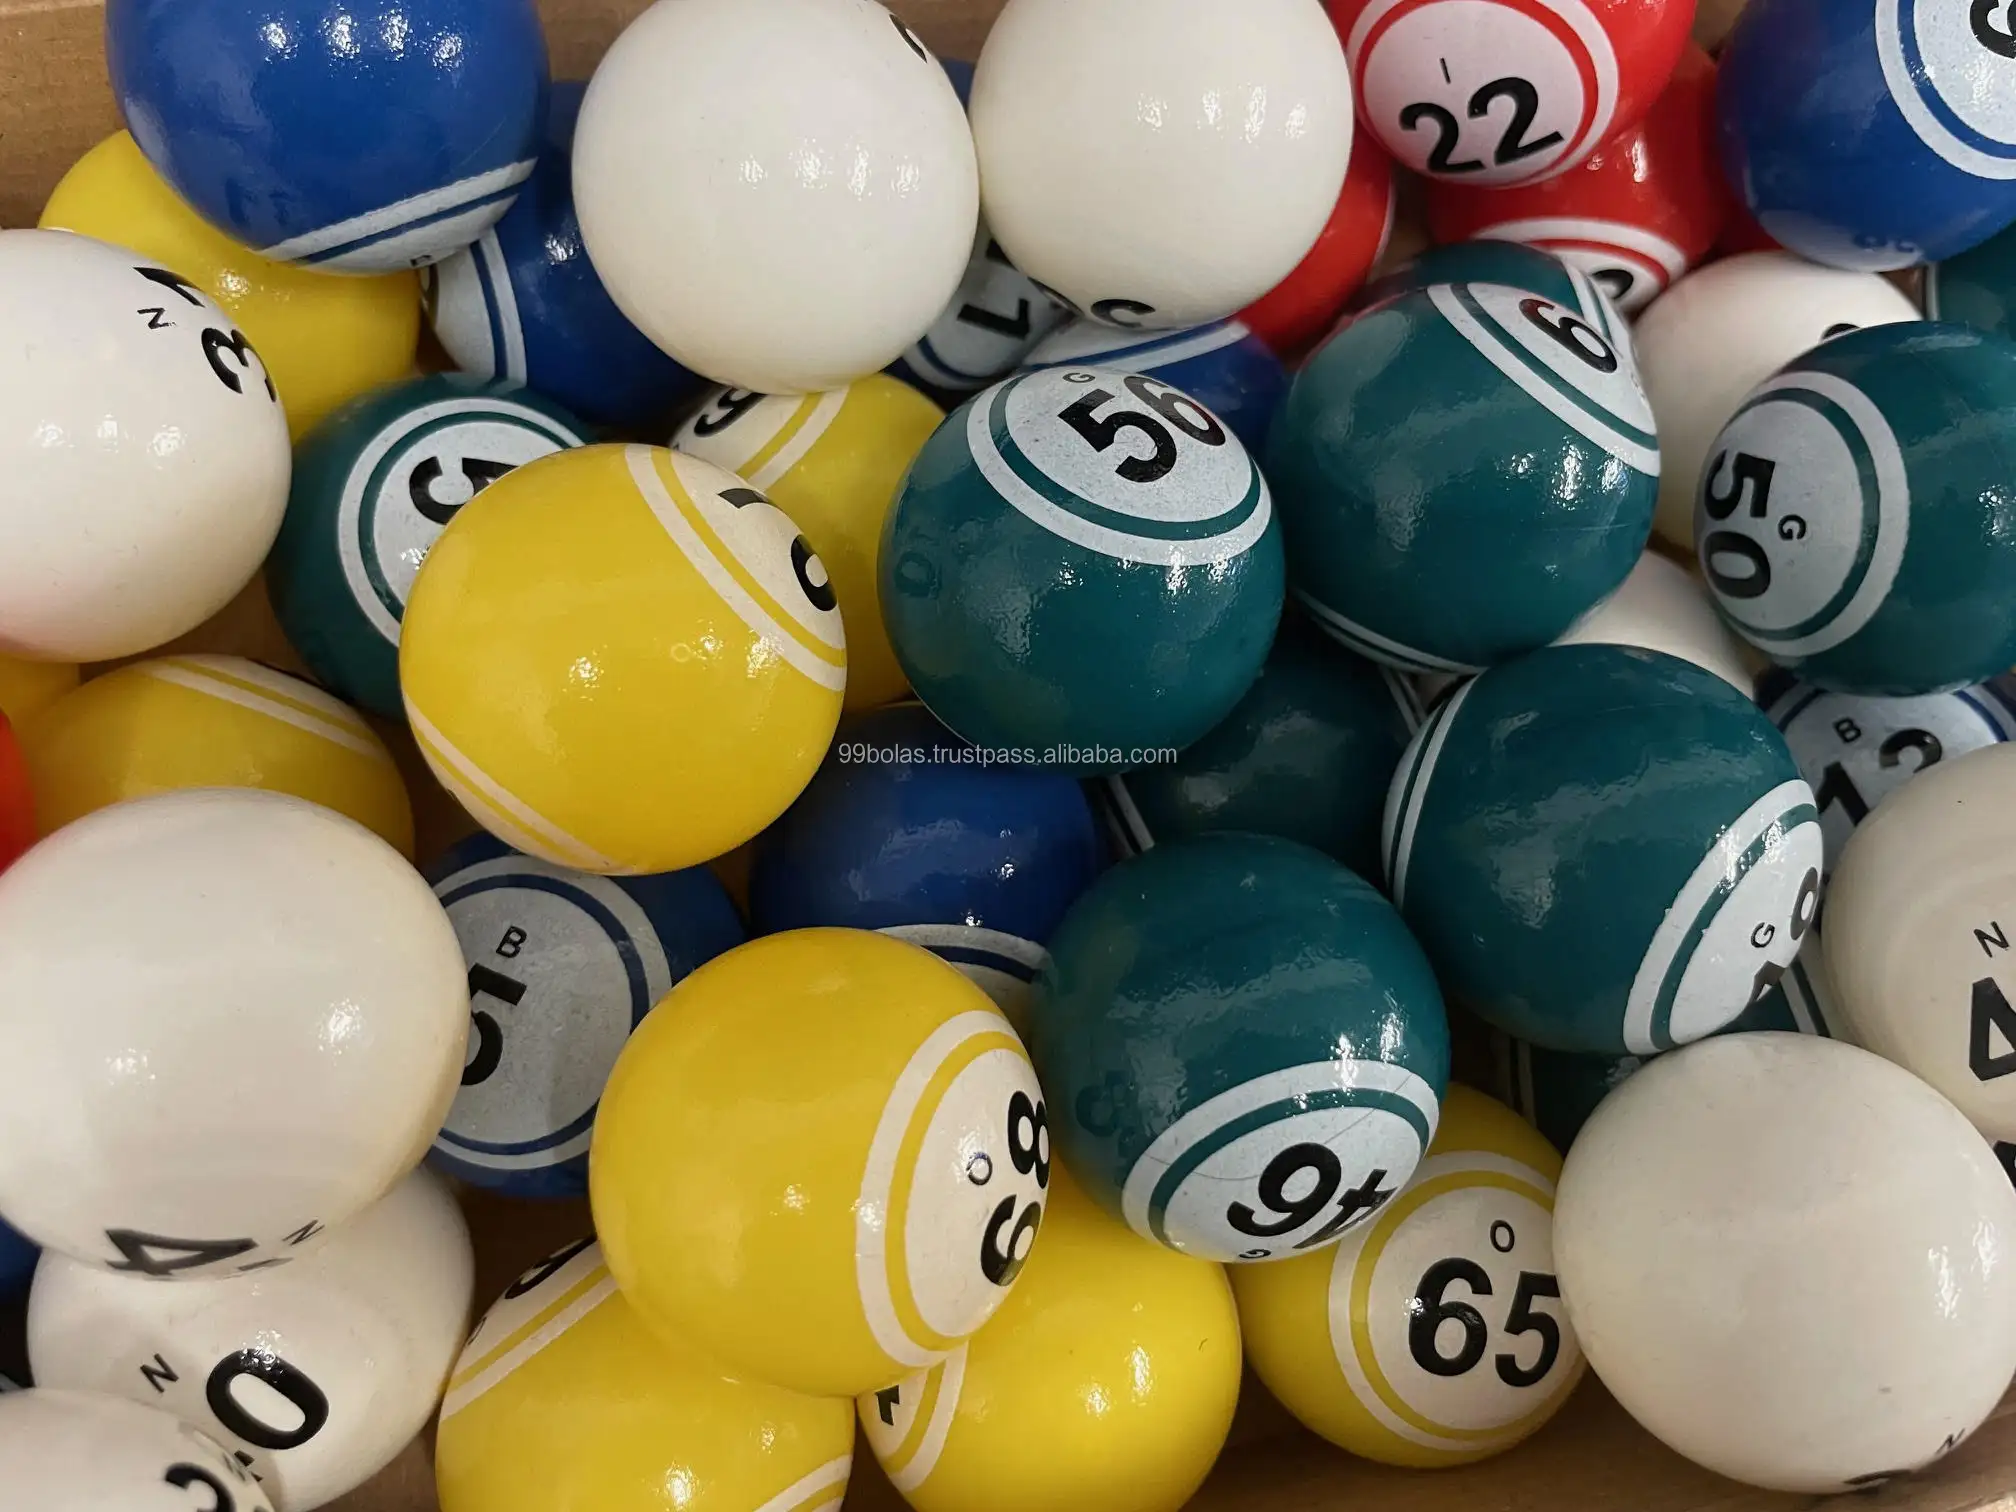 Langlebige 2-seiten-mehrfarbige ballspiele gewinnbälle für das bingo-spiel